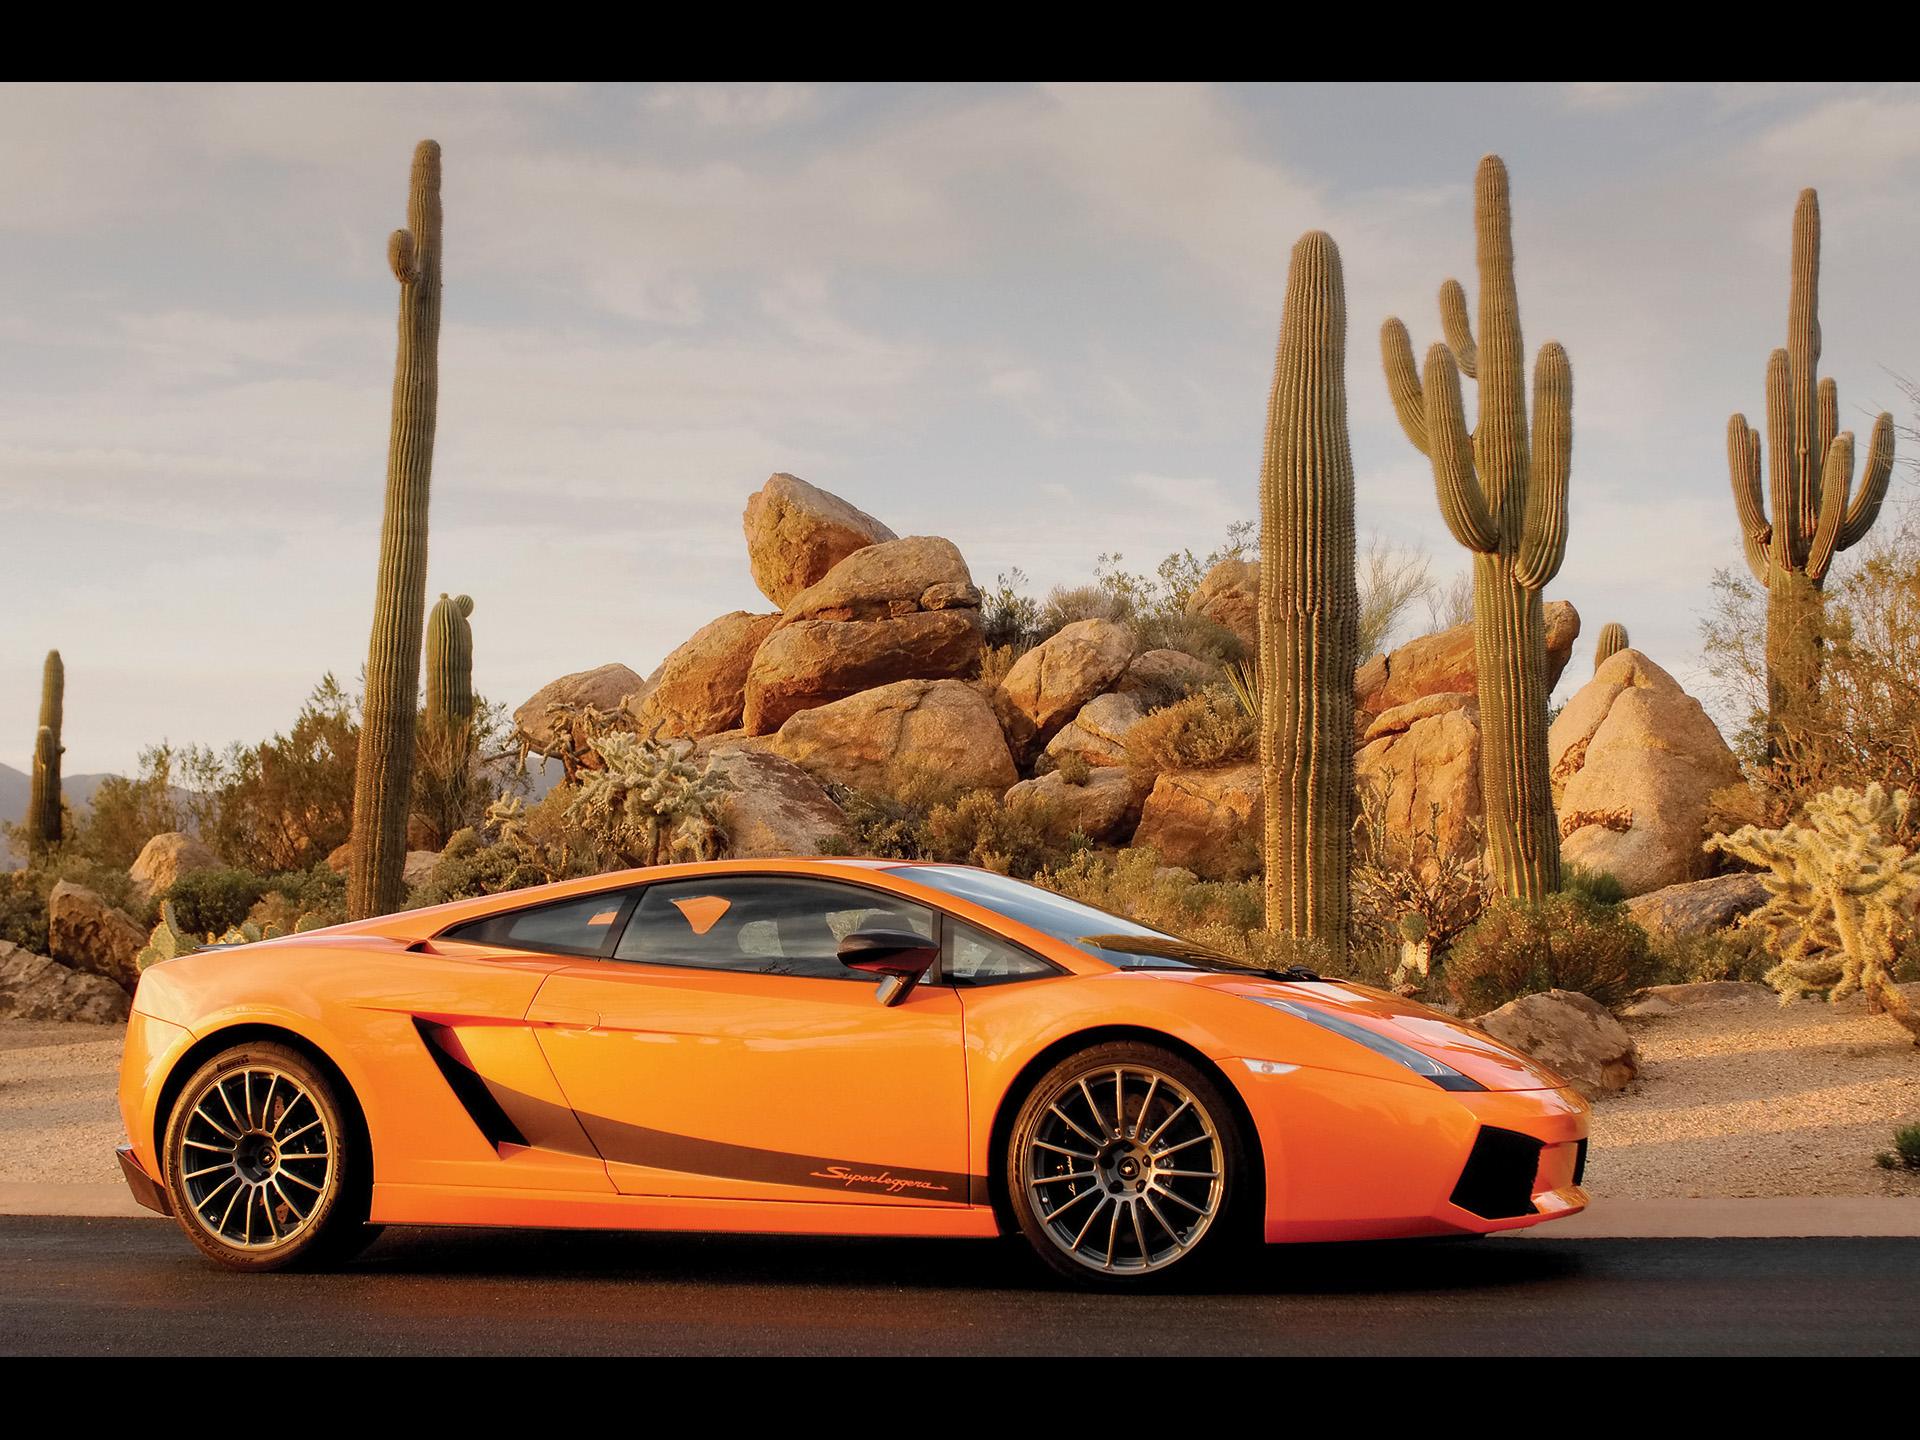 автомобили, оранжевый цвет, Ламборгини, кактус, транспортные средства, суперкары, Lamborghini Gallardo, вид сбоку, Lamborghini Gallardo Superleggera LP570-4, итальянские автомобили - обои на рабочий стол